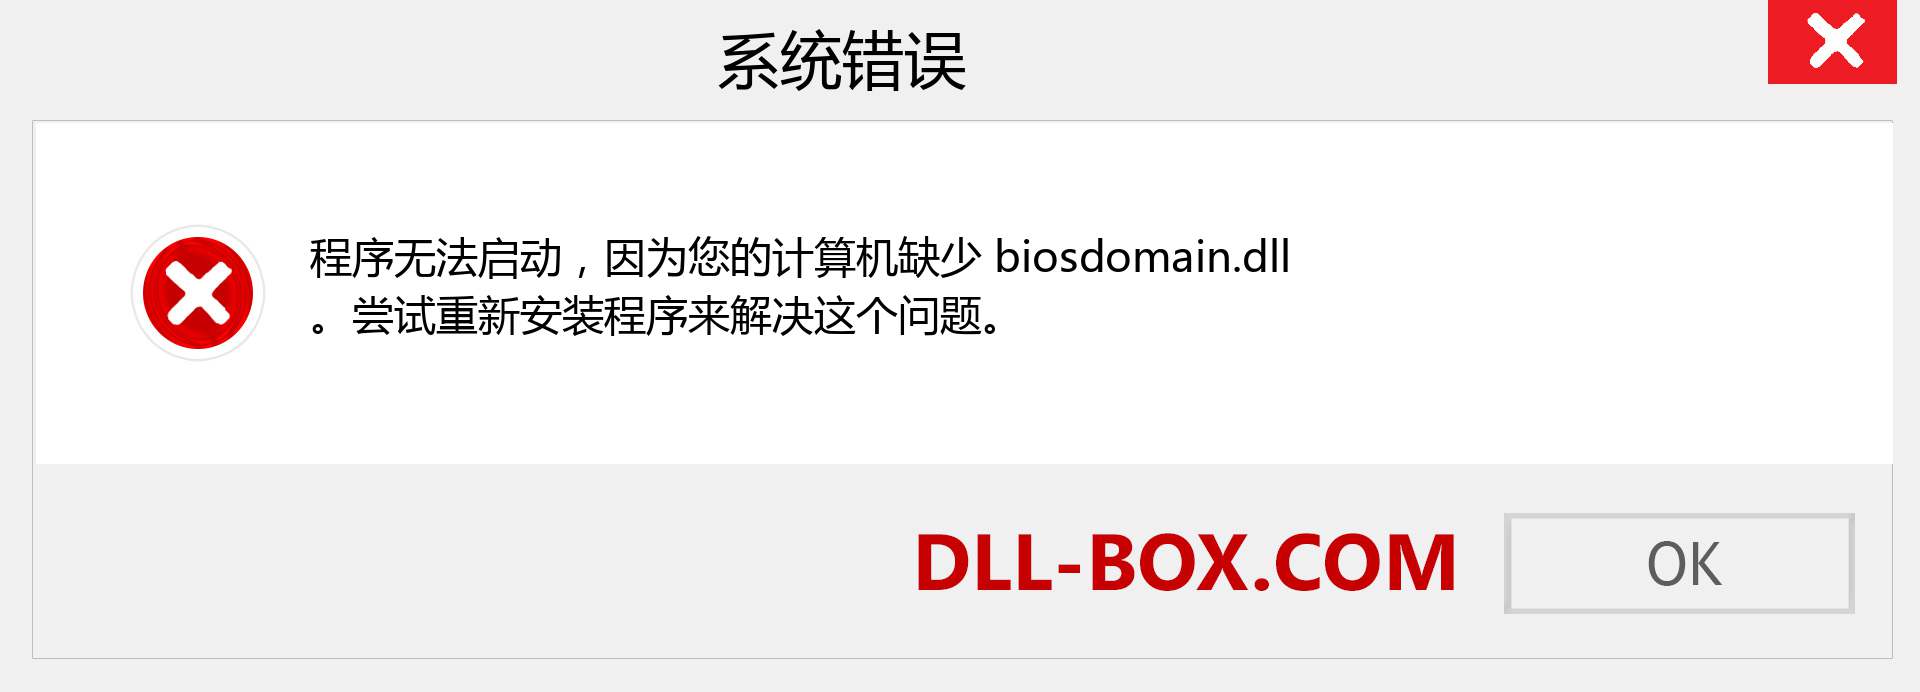 biosdomain.dll 文件丢失？。 适用于 Windows 7、8、10 的下载 - 修复 Windows、照片、图像上的 biosdomain dll 丢失错误